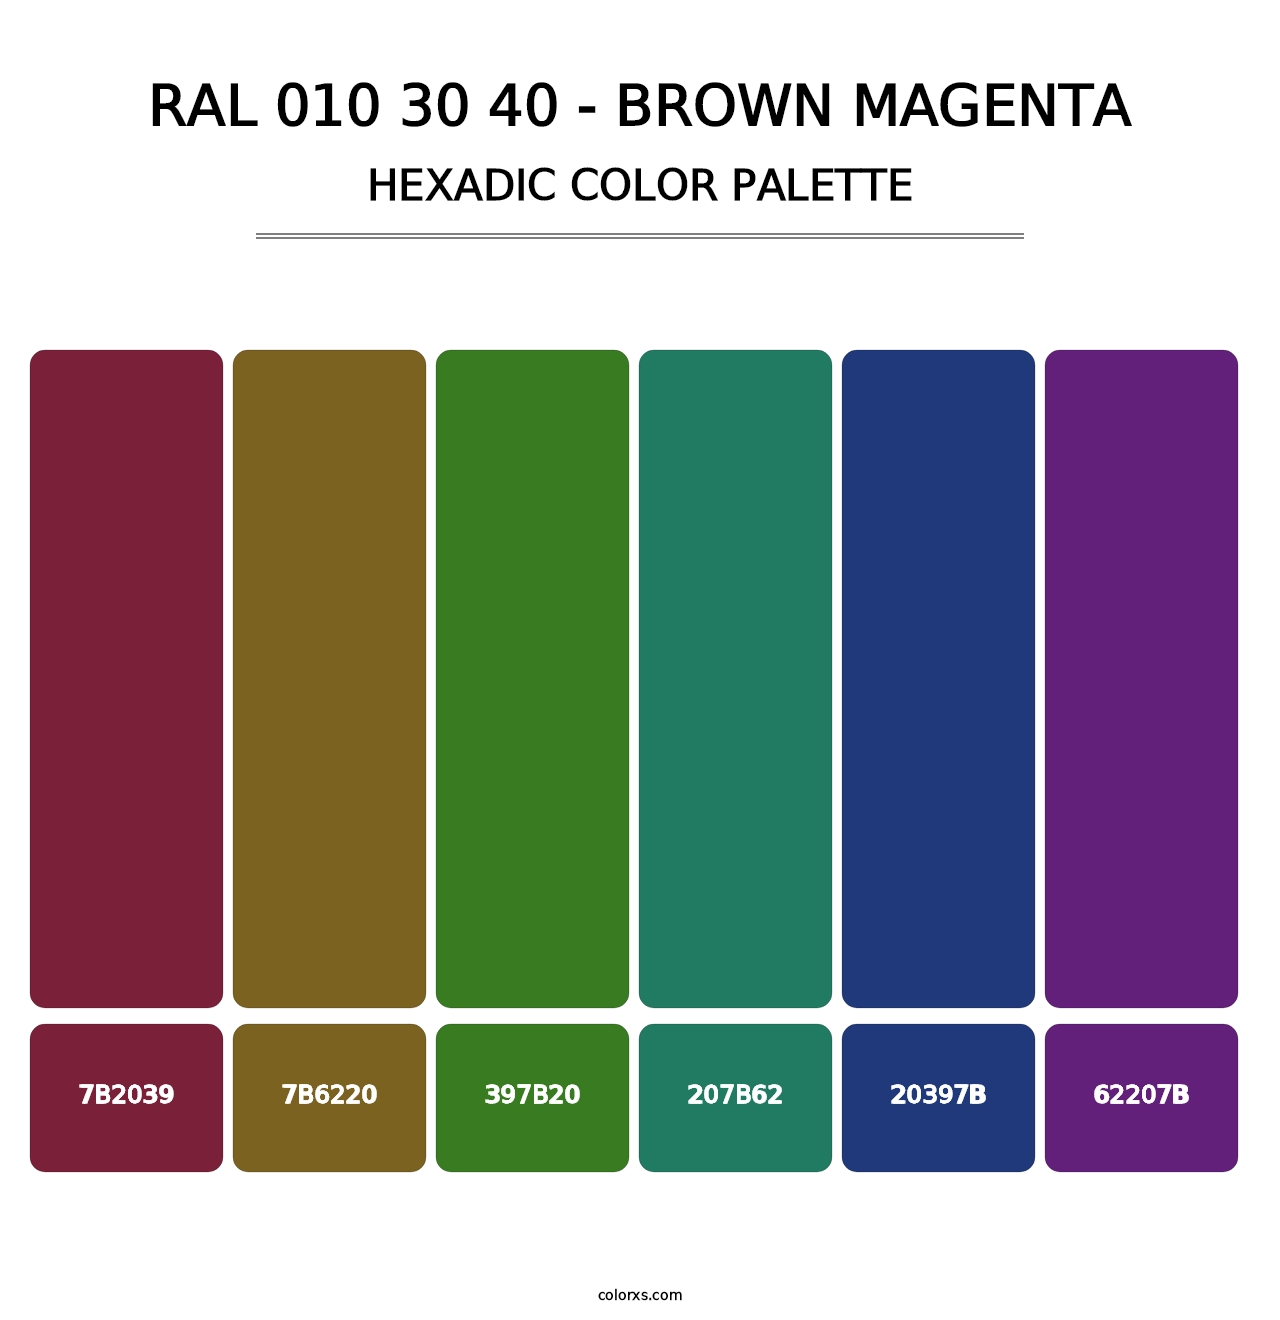 RAL 010 30 40 - Brown Magenta - Hexadic Color Palette